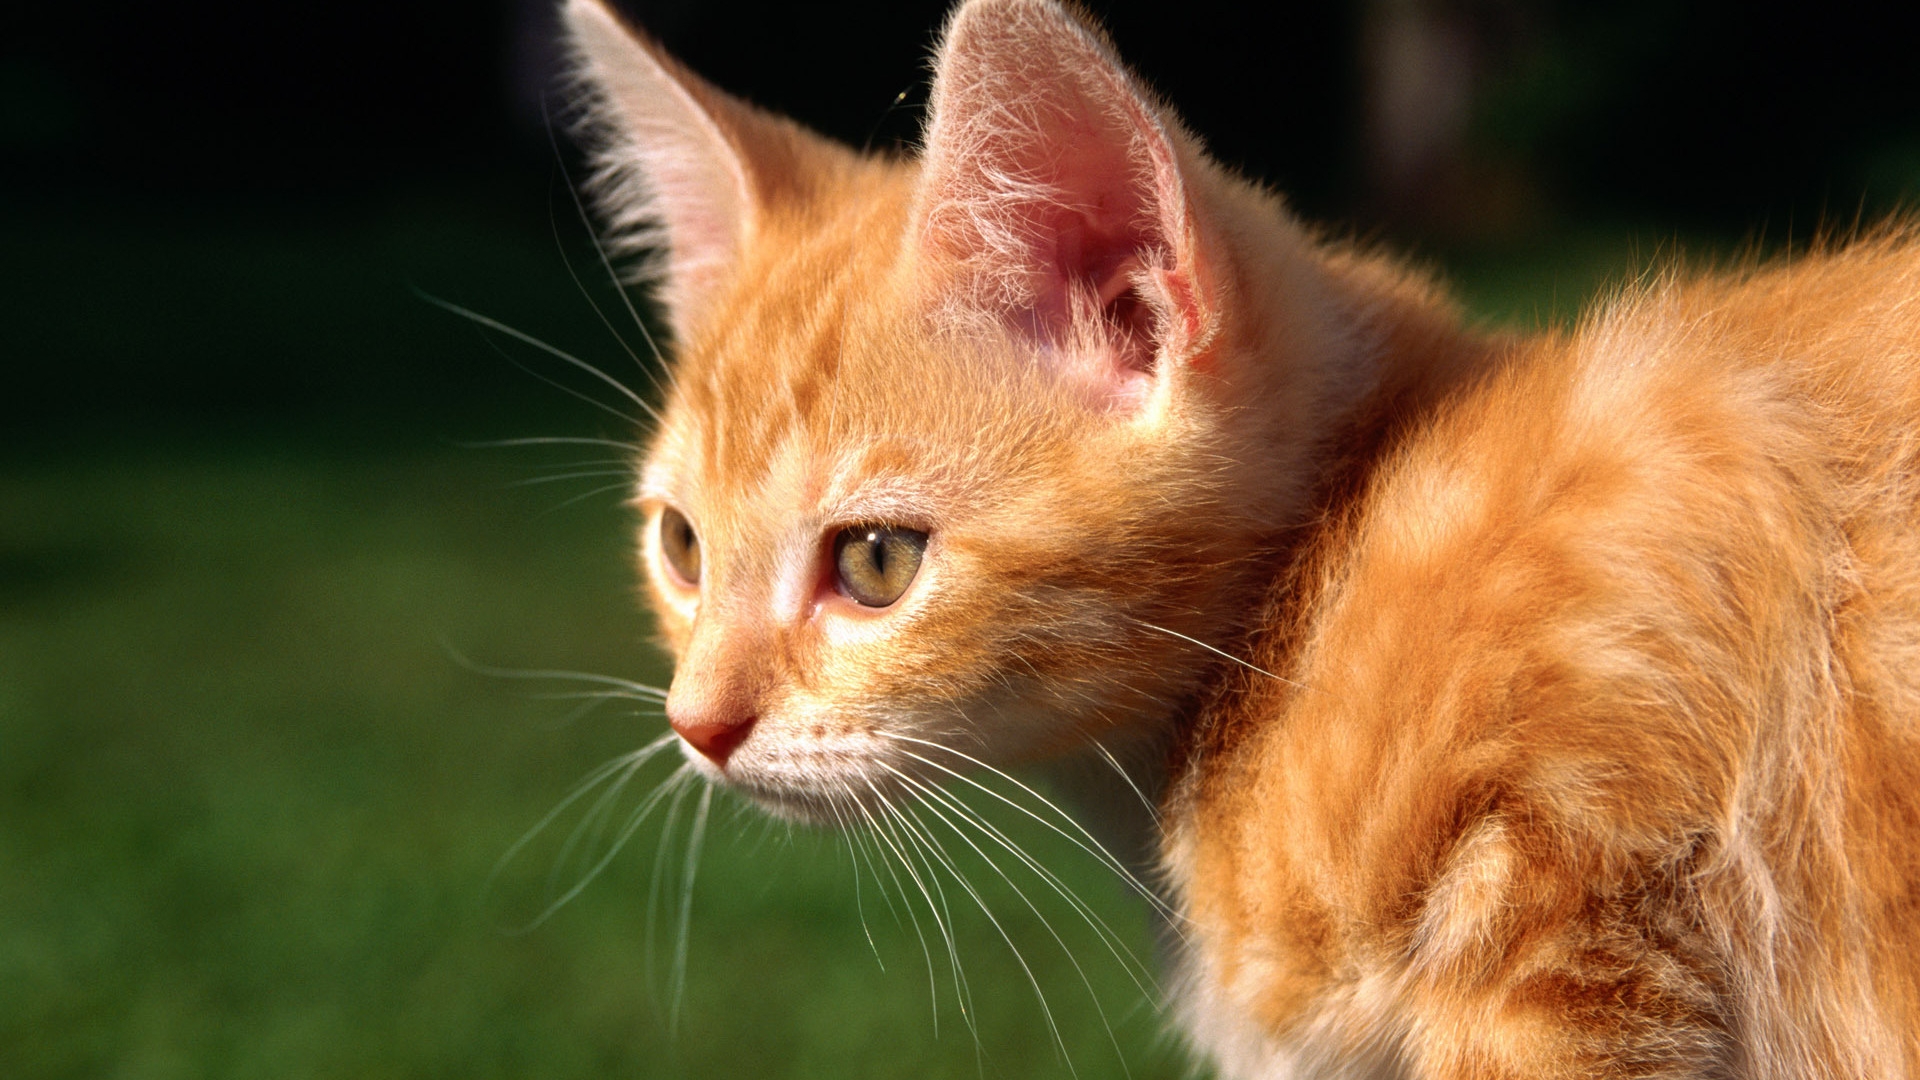 Red Kitten for 1920 x 1080 HDTV 1080p resolution